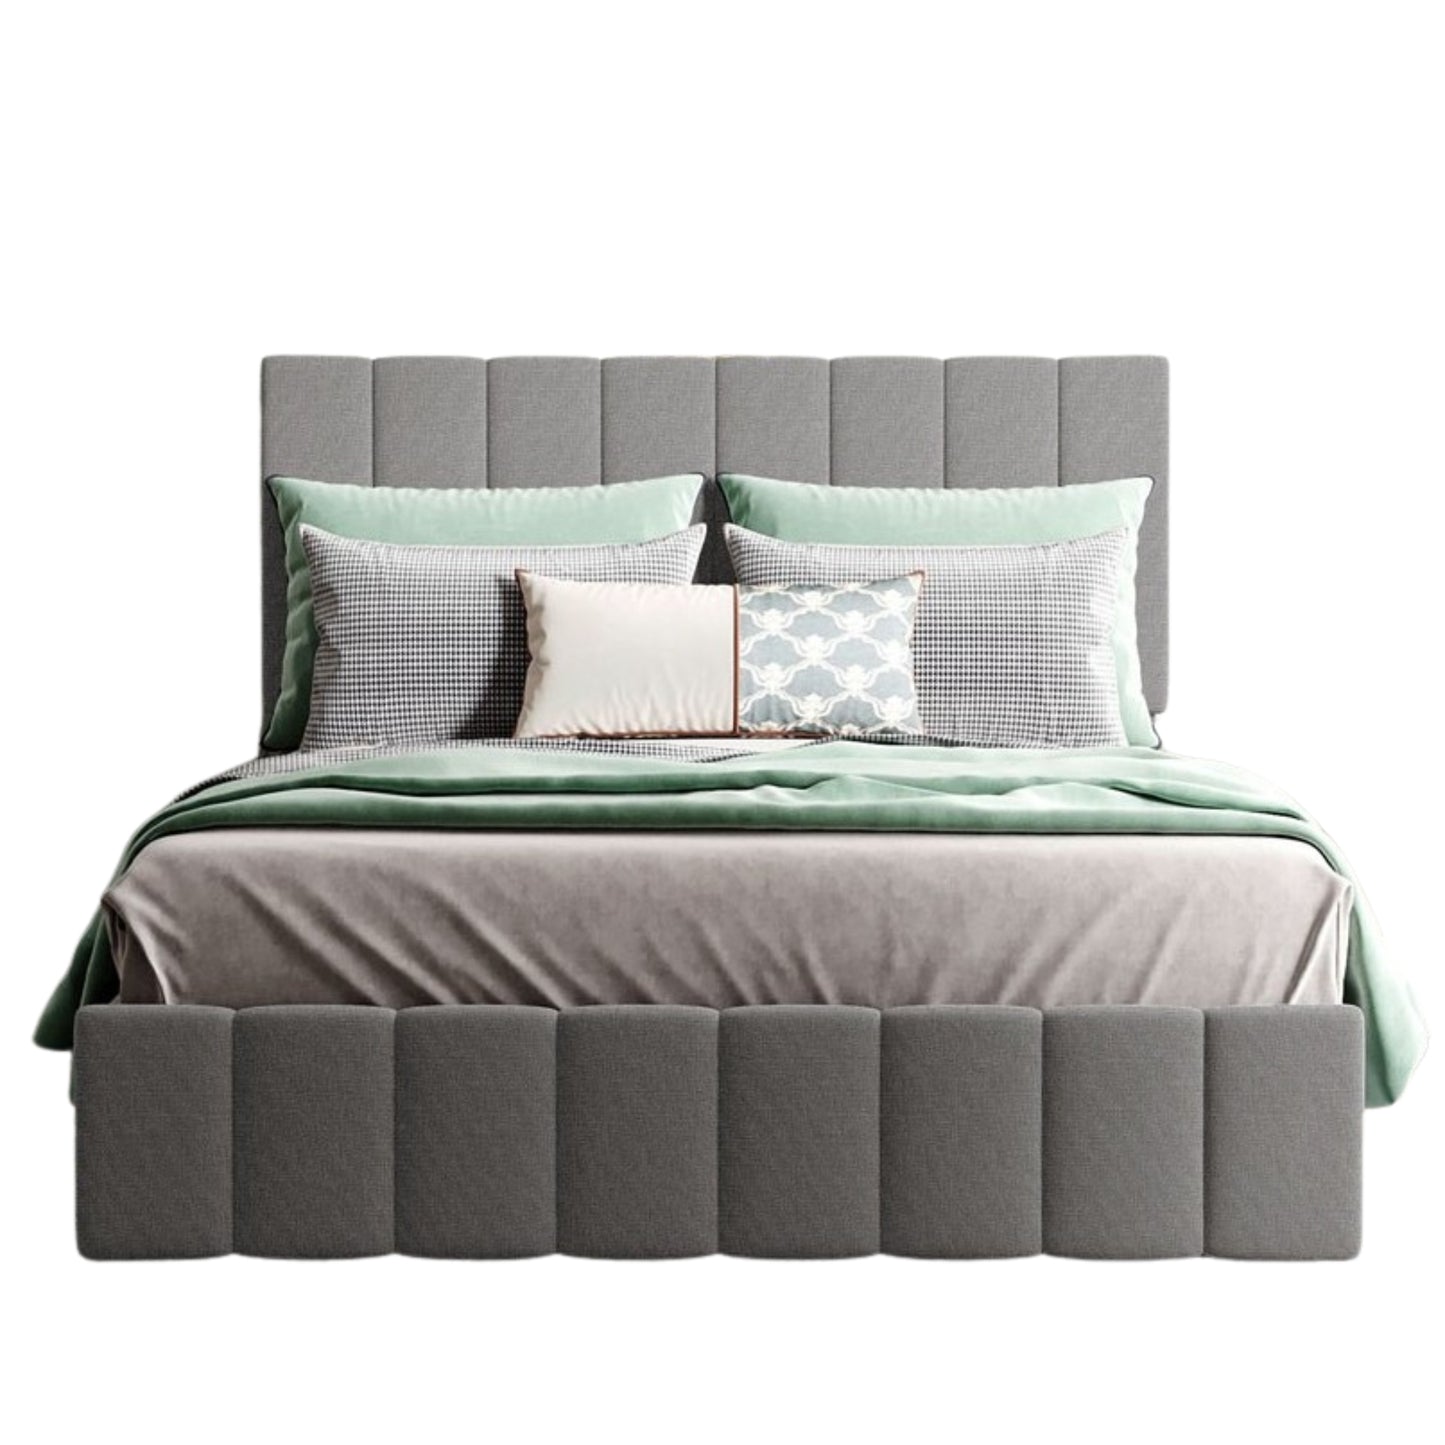 Full Double Gray Upholstered Linen Blend Bed